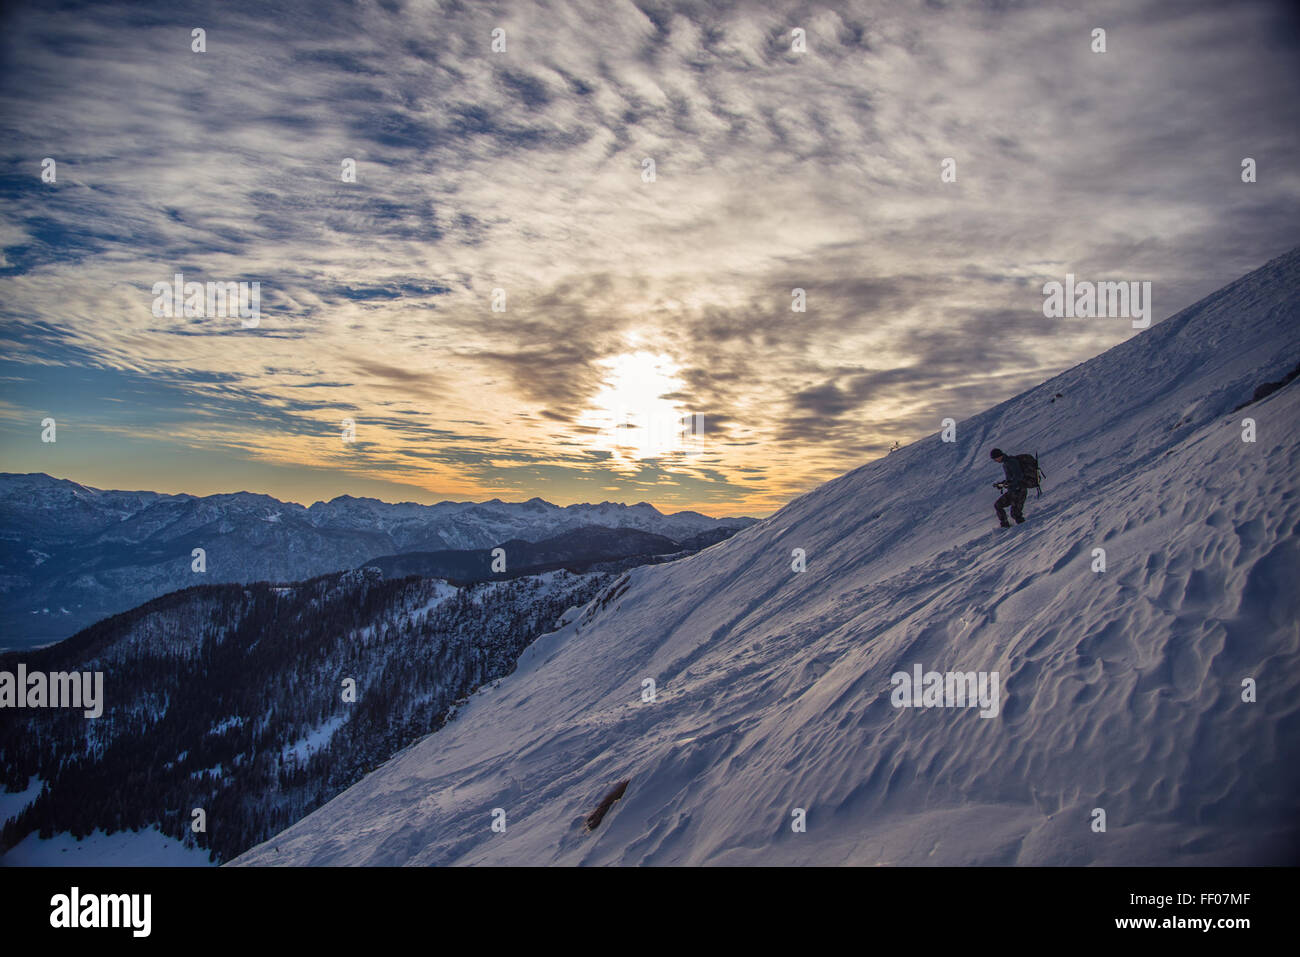 Mountain Climber on Icy Mountainside Mountain Climber on Icy Mountainside Stock Photo